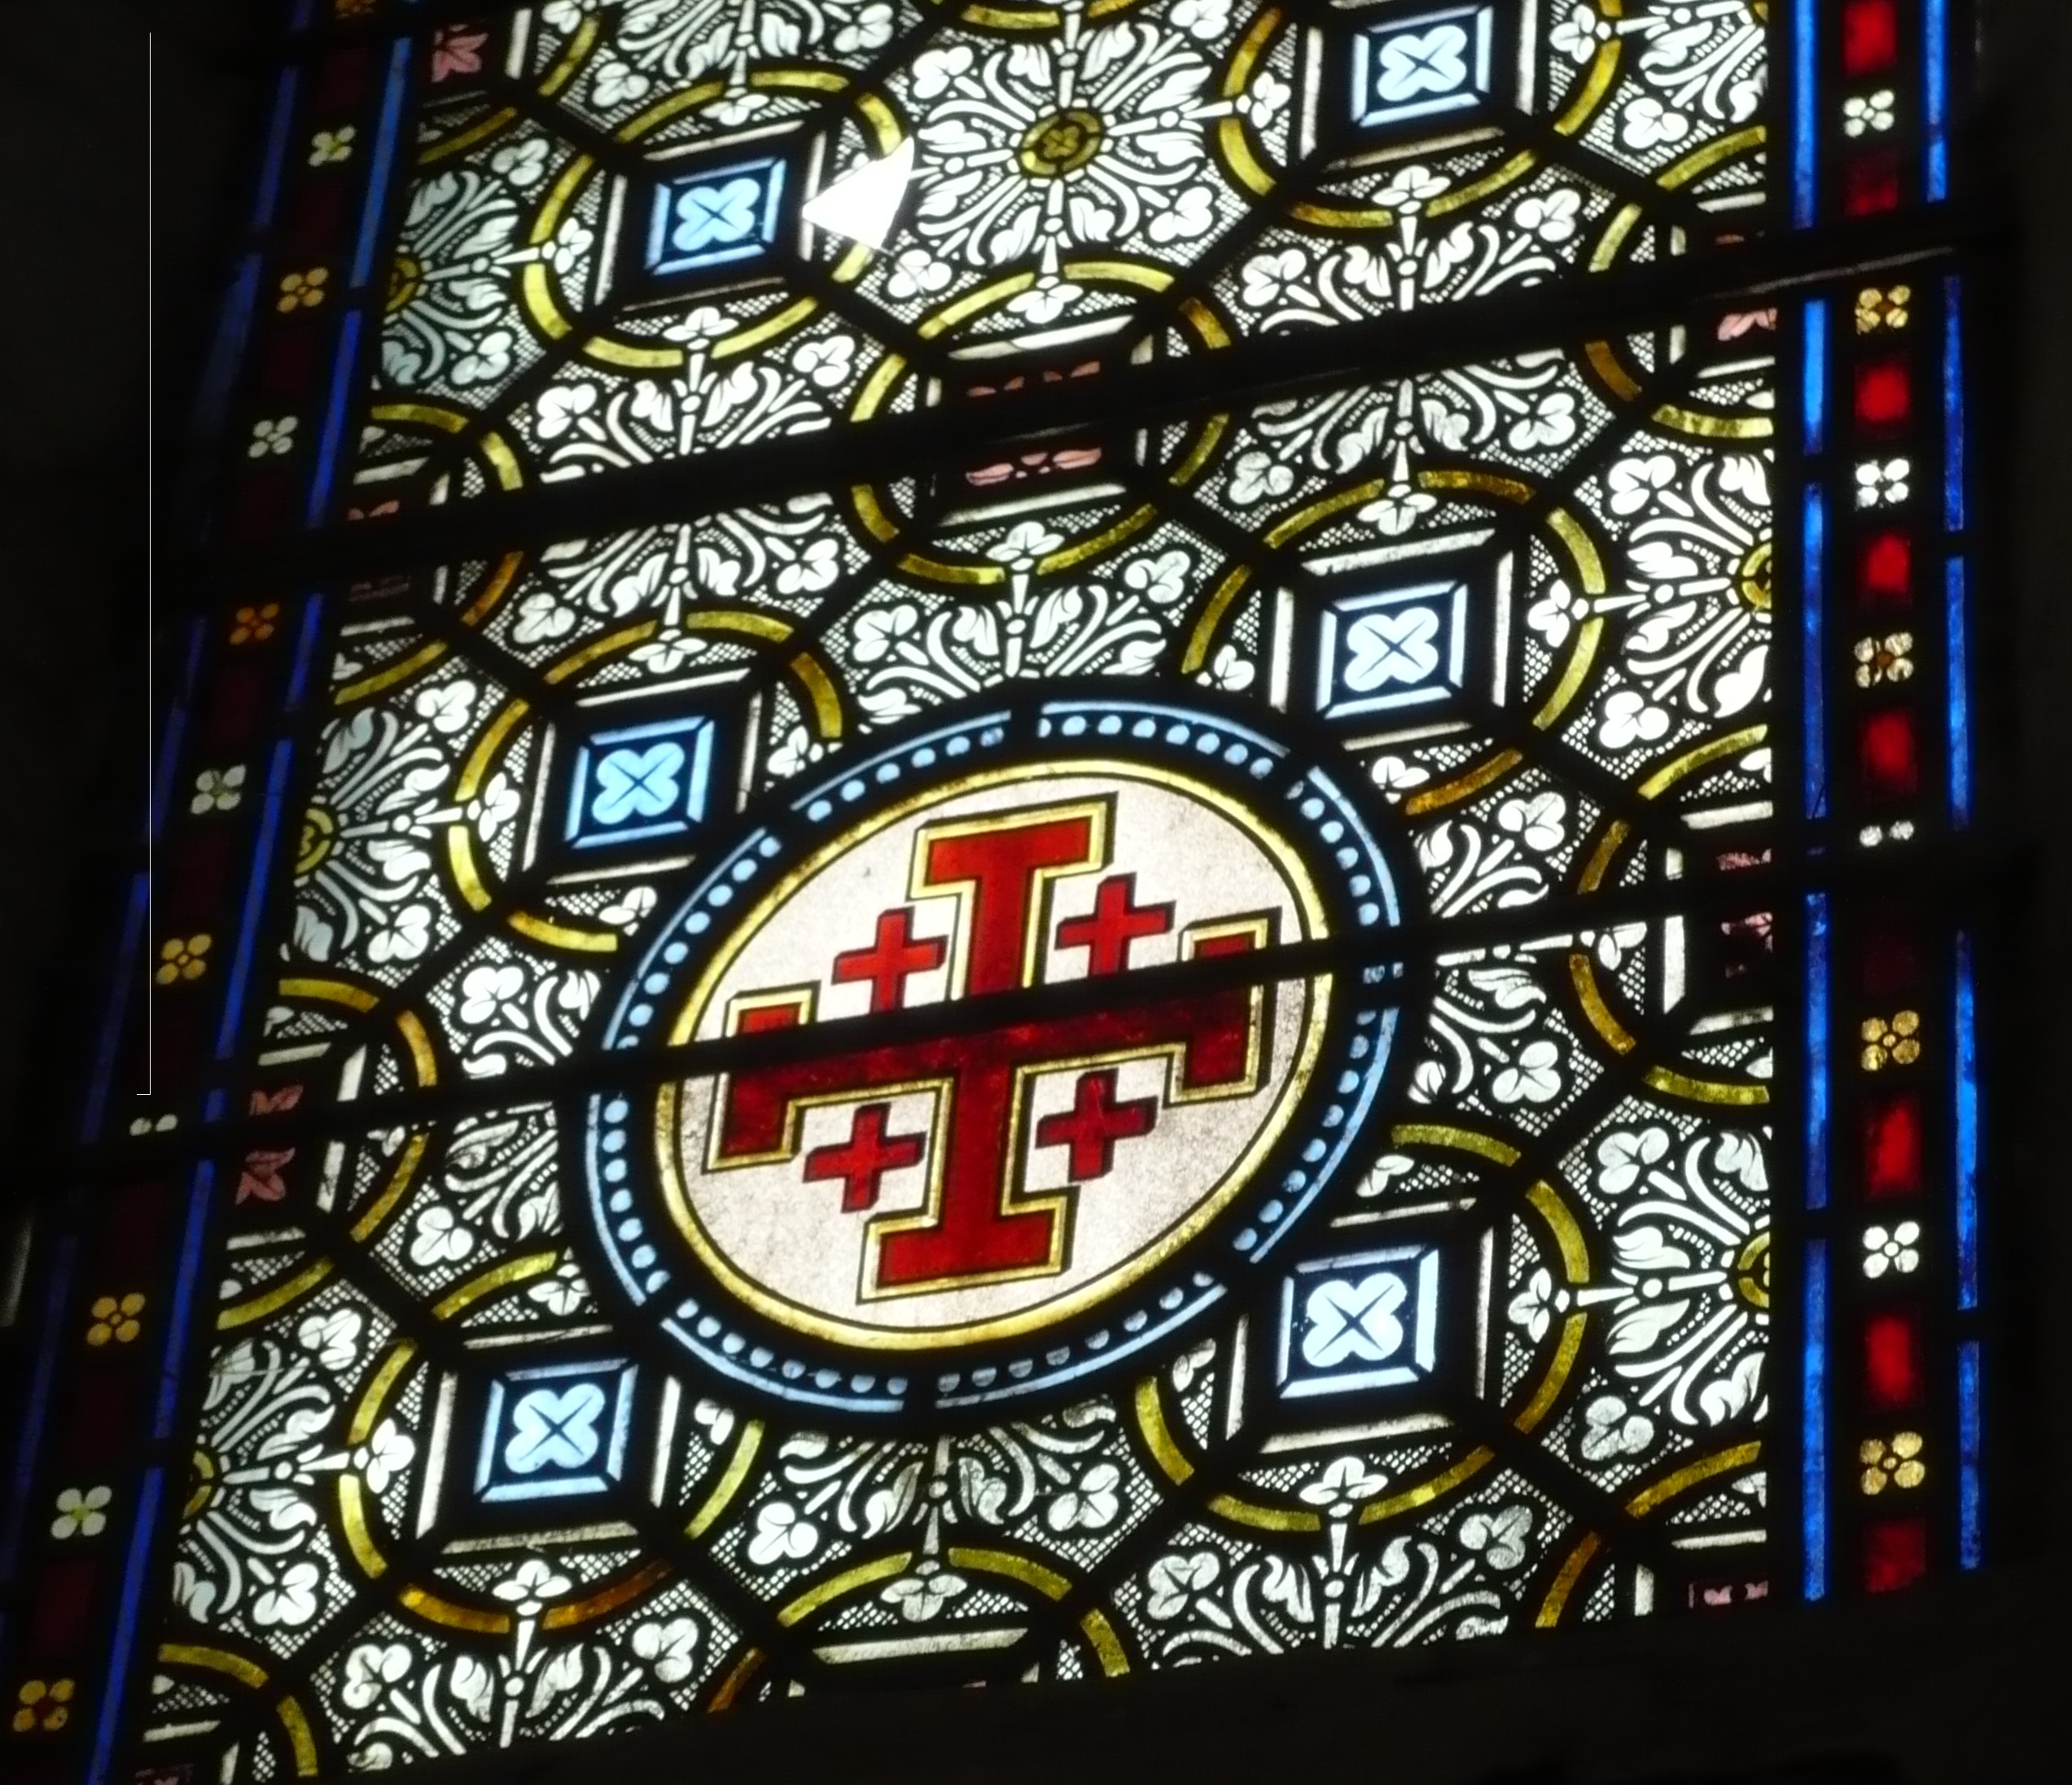 Cross of Jerusalem in window